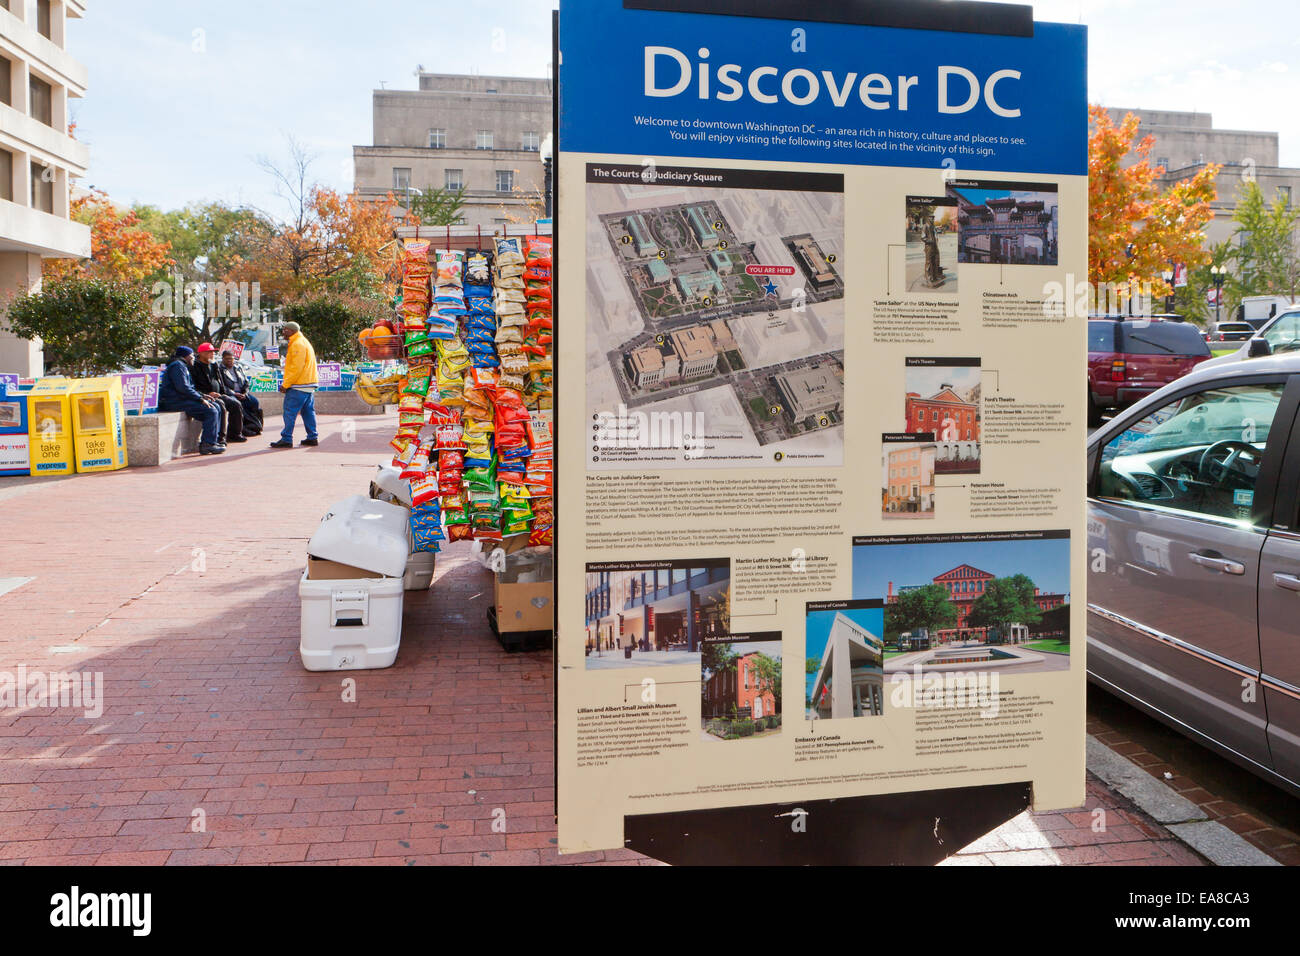 Discover DC, Washington DC citywide wayfinding program sign - Washington, DC USA Stock Photo